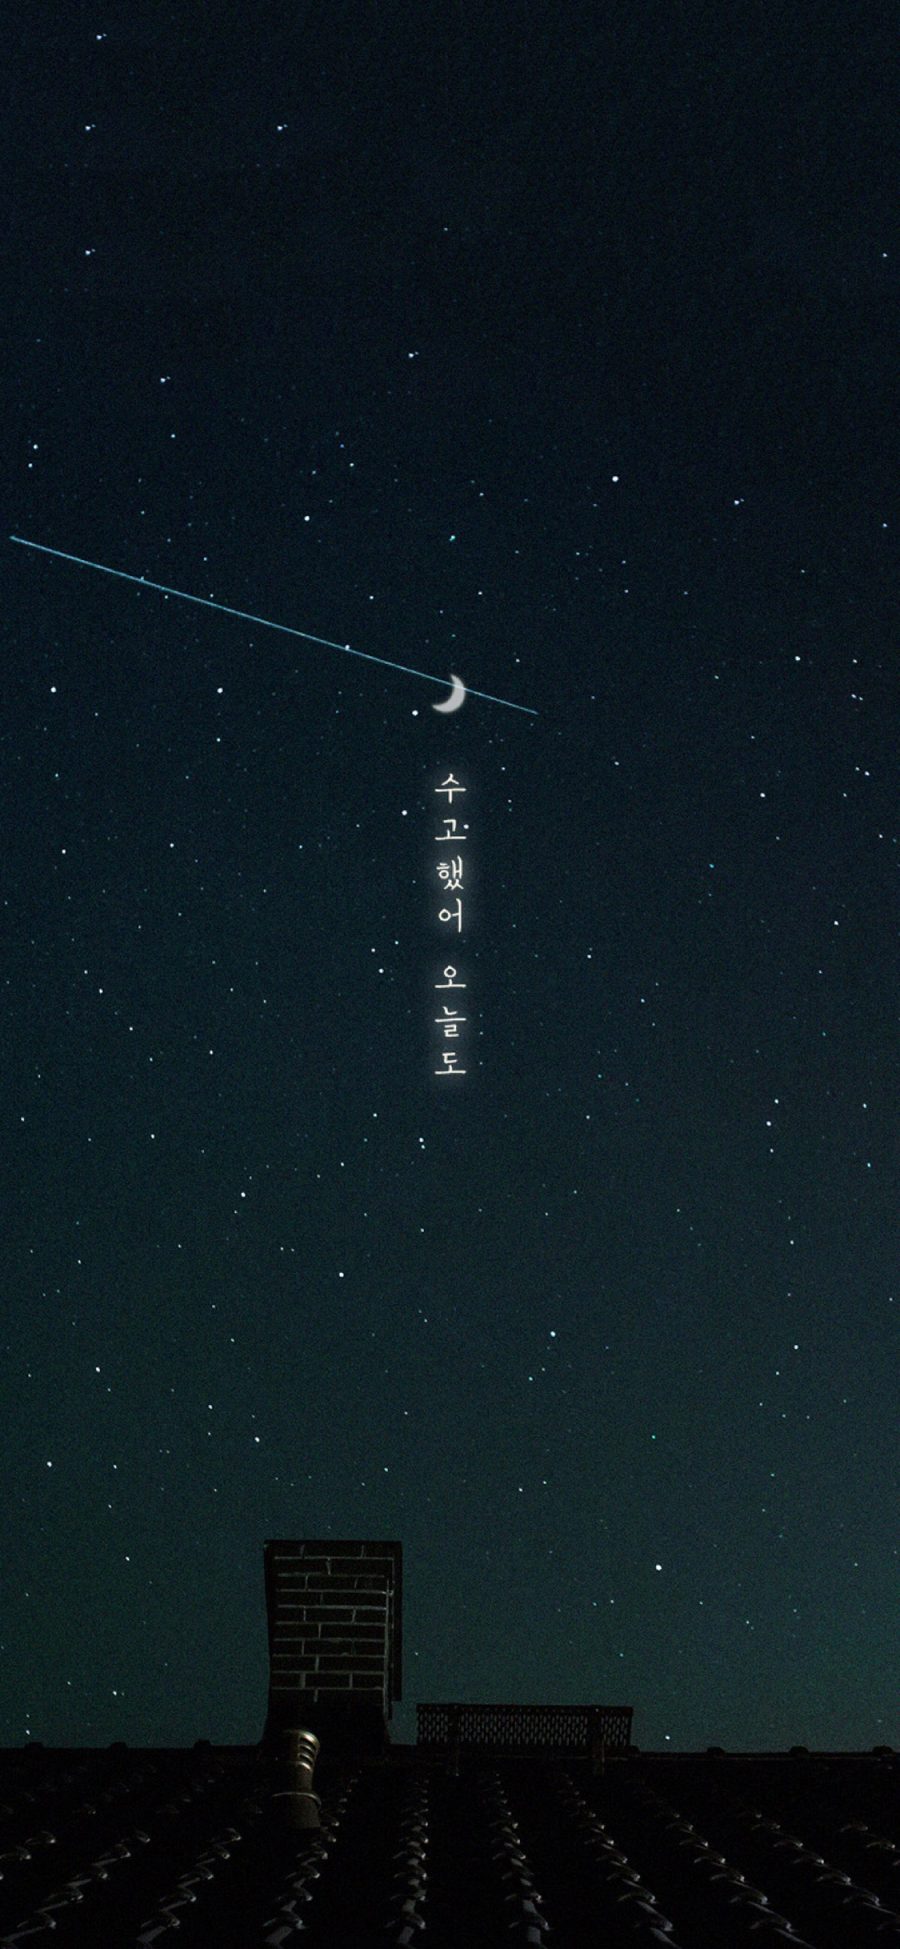 [2436×1125]动漫场景 星空夜景 韩文 月亮 苹果手机动漫壁纸图片